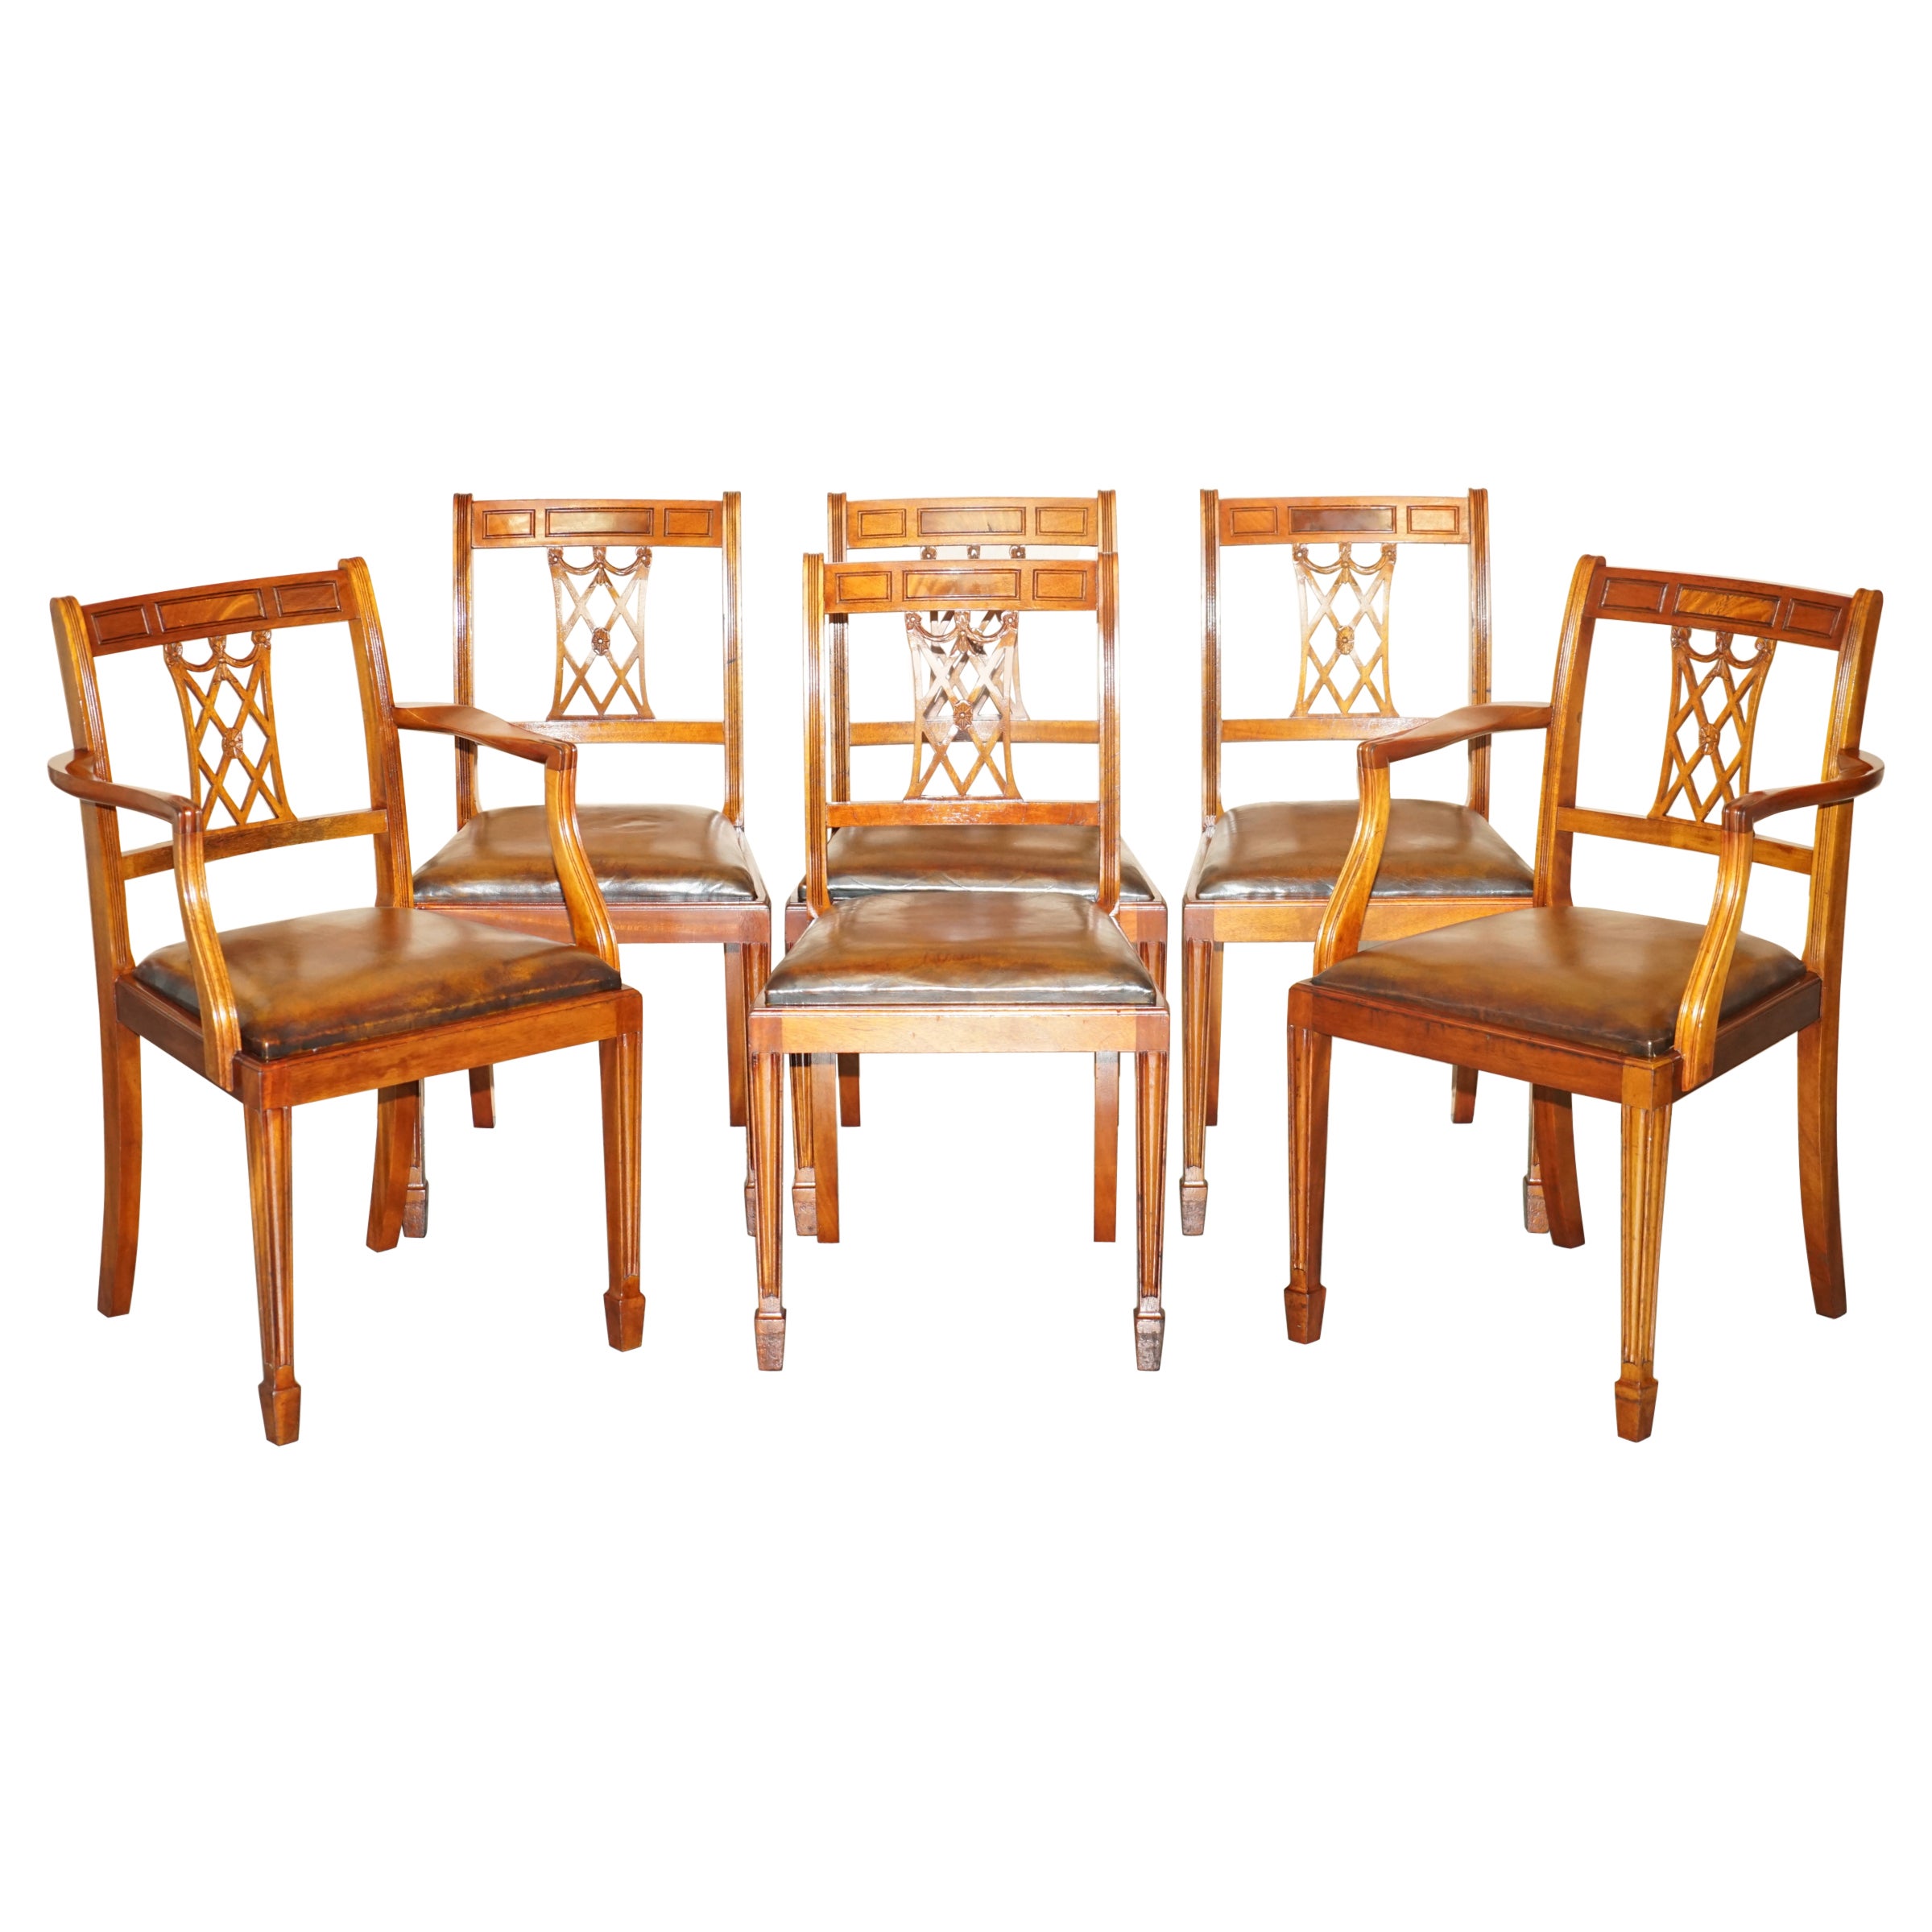 Six chaises de salle à manger en cuir Brown teinté à la main, restaurées et sculptées à la main